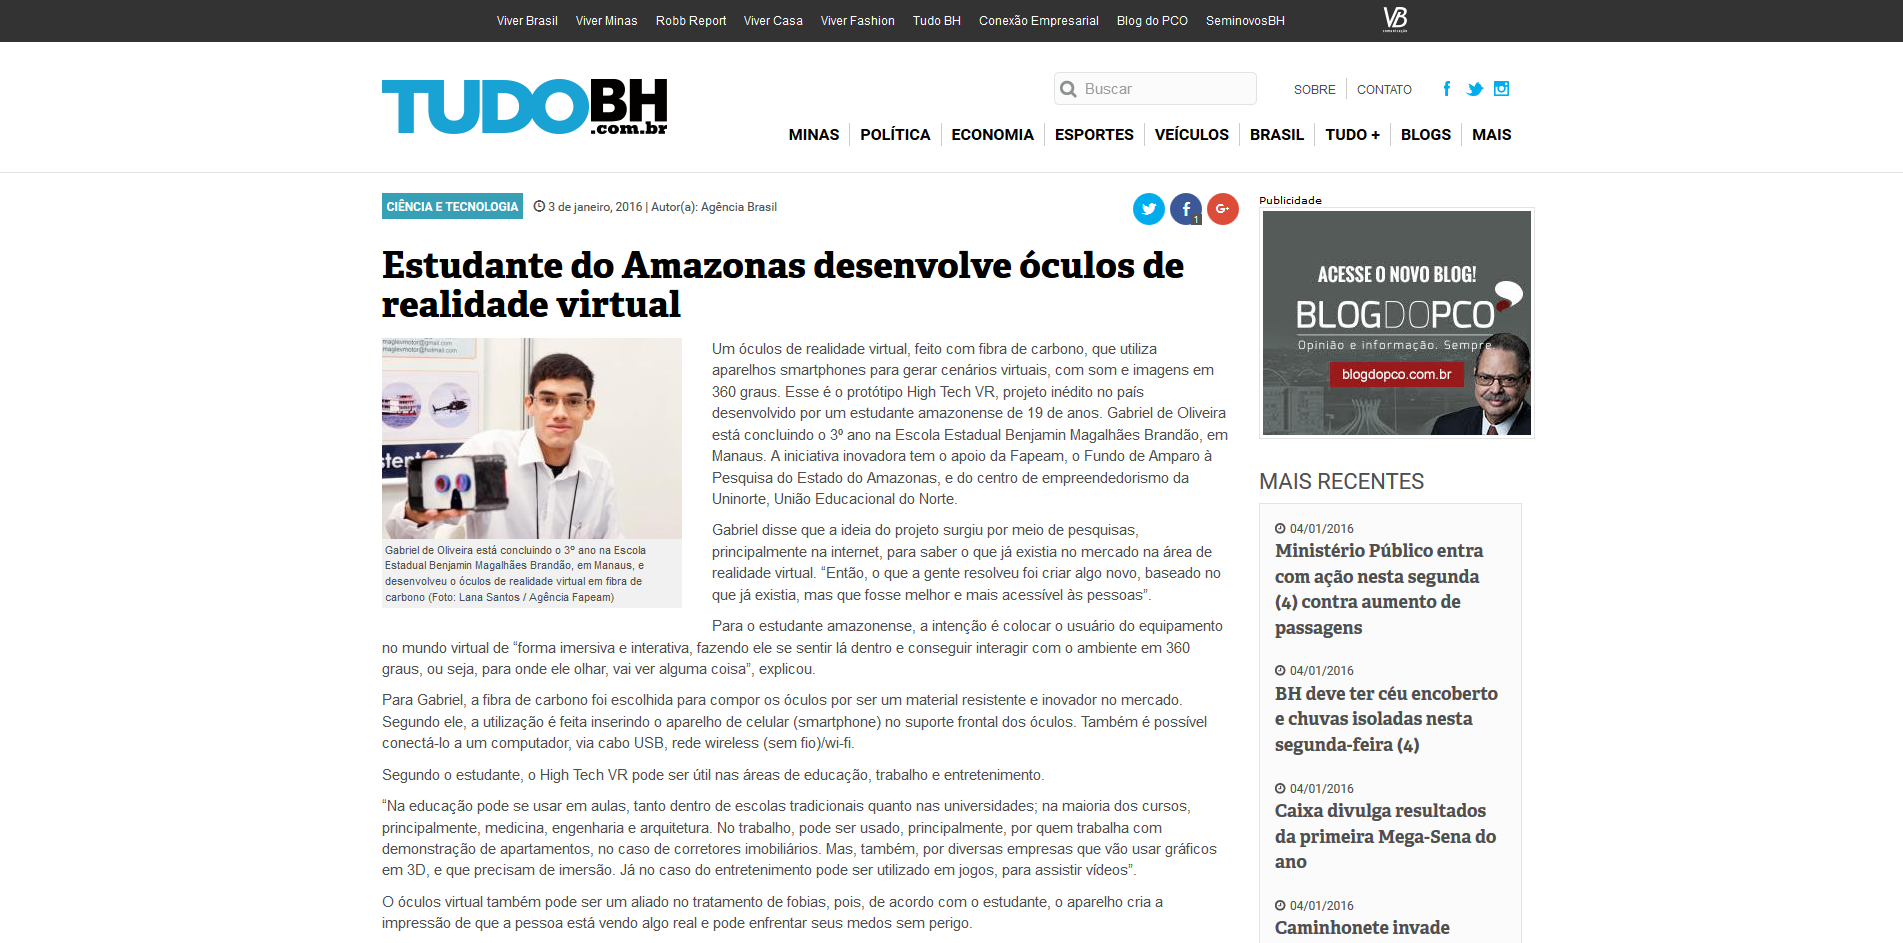 Editoria: Pag: Tudo BH Assunto: Estudante do Amazonas desenvolve óculos de realidade virtual Veículo: Data: 03/01/2016 Um óculos de realidade virtual, feito com fibra de carbono, que utiliza